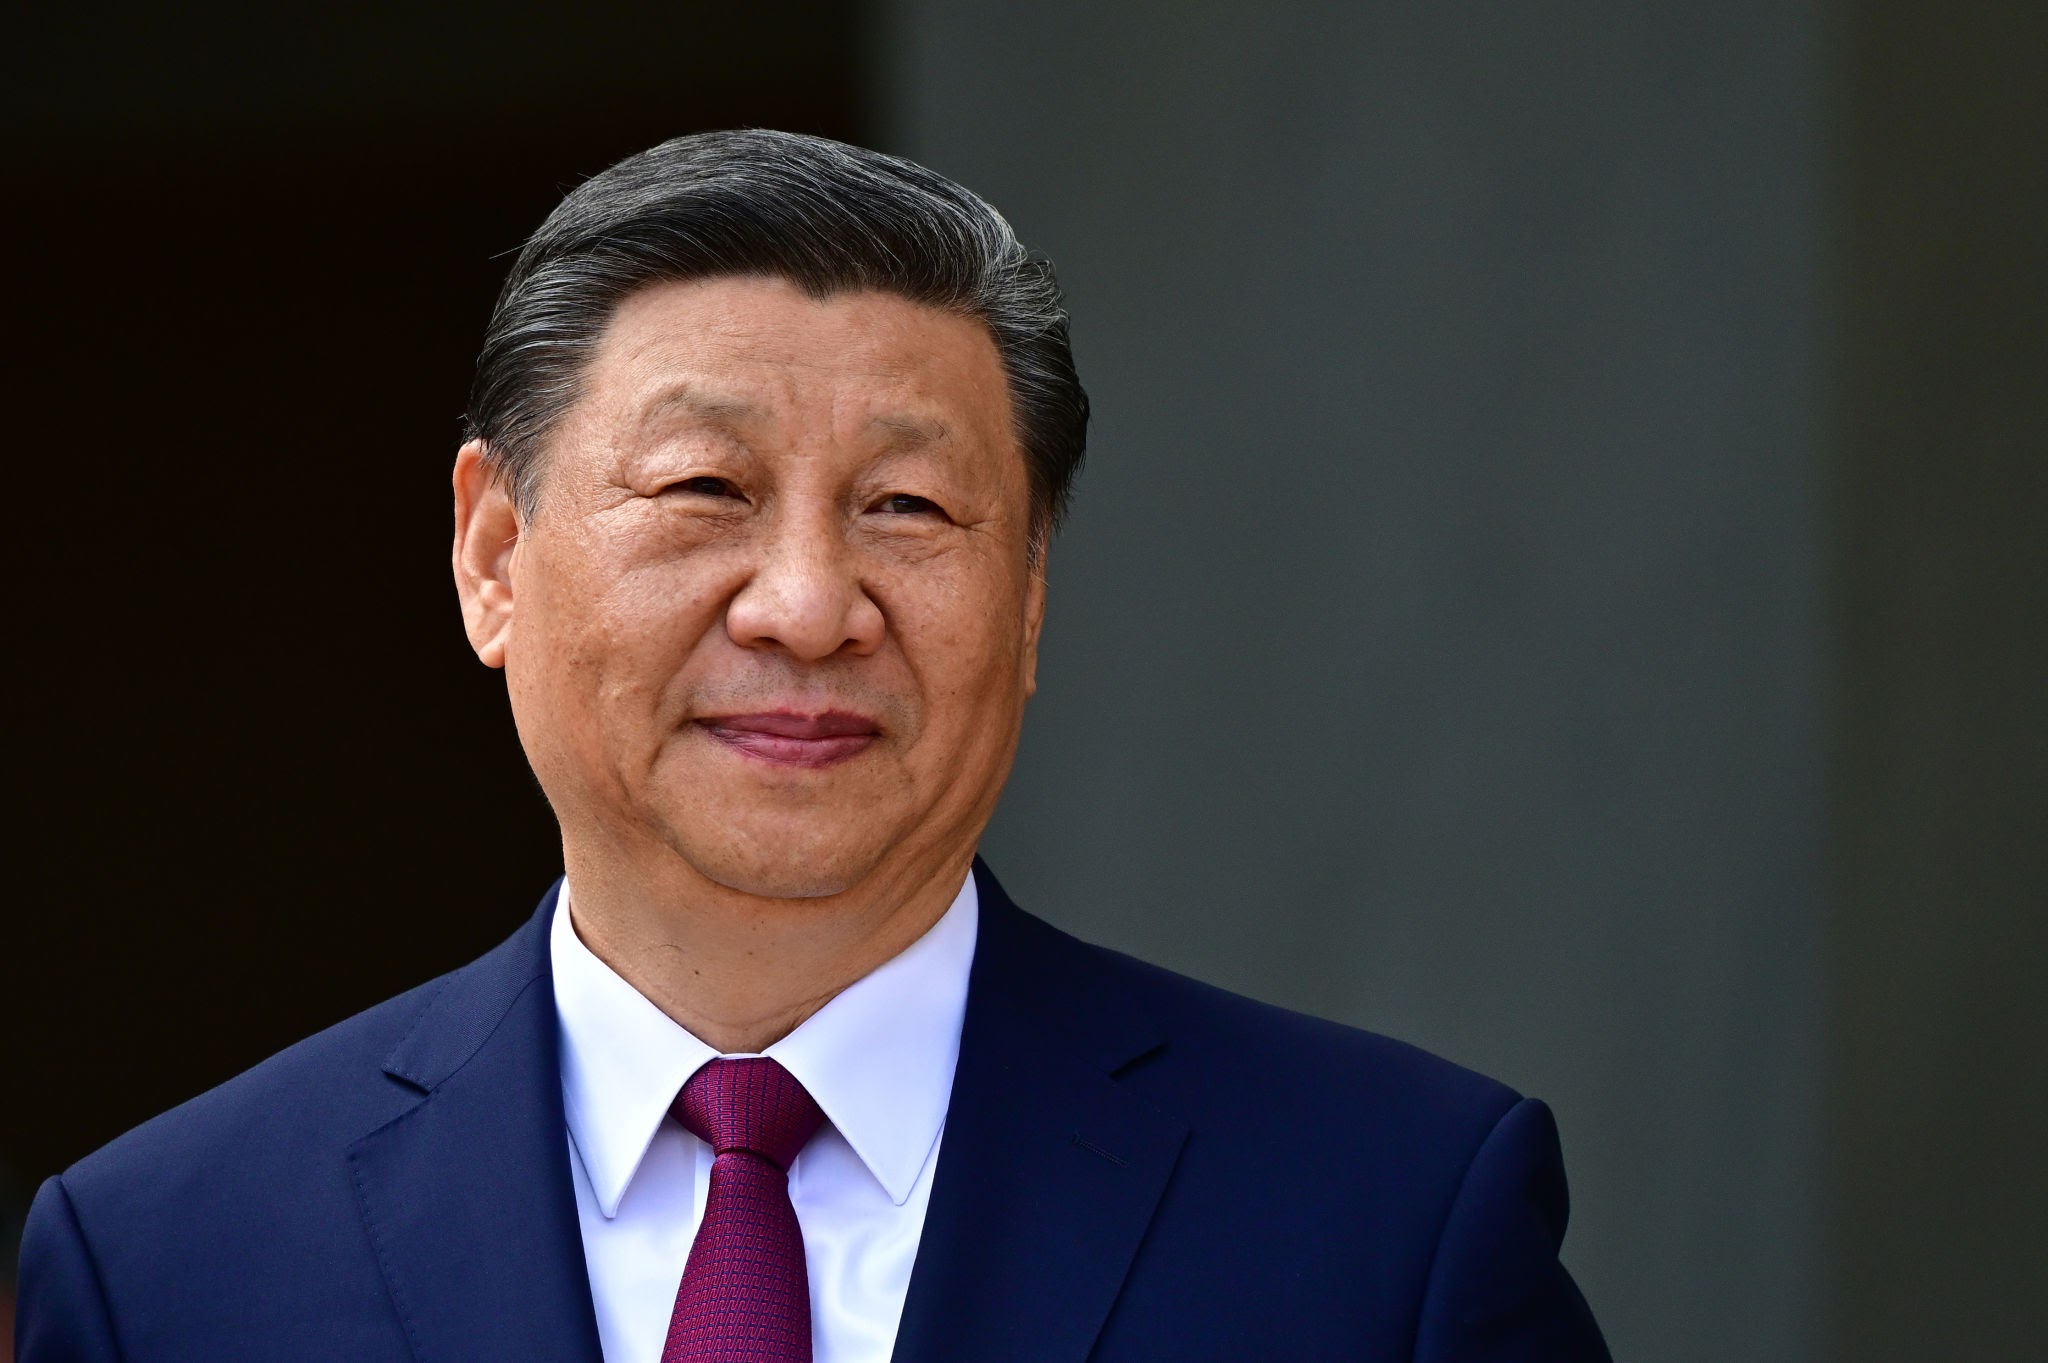 هل تتشرف جائزة نوبل بحصول الرئيس الصيني عليها؟